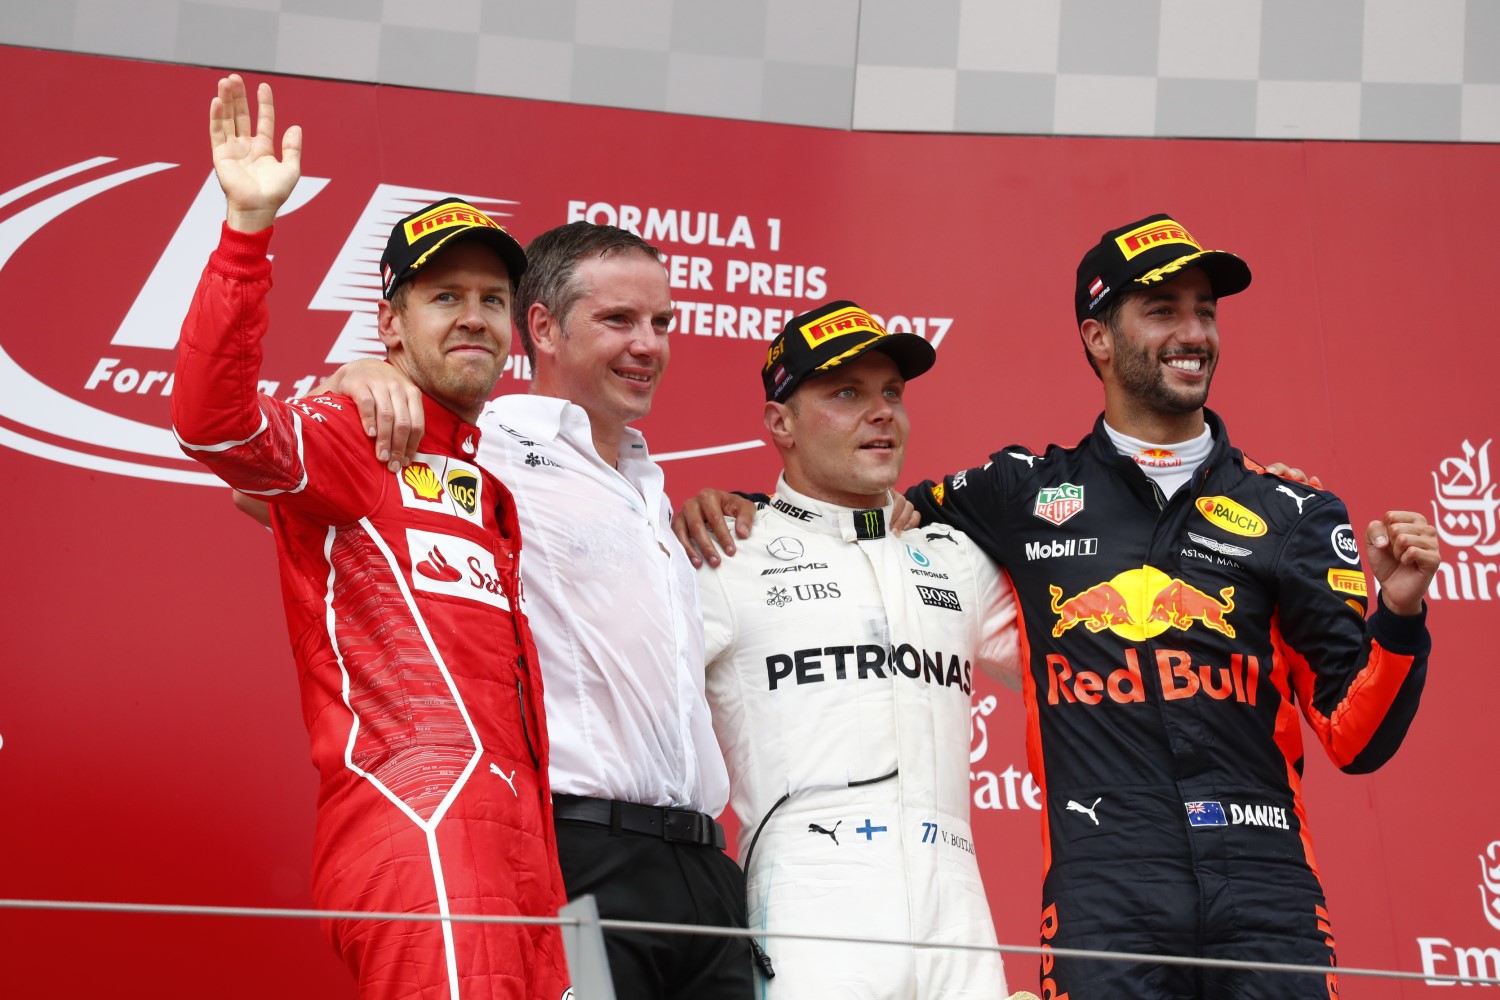 From left, Vettel, Bottas and Ricciardo